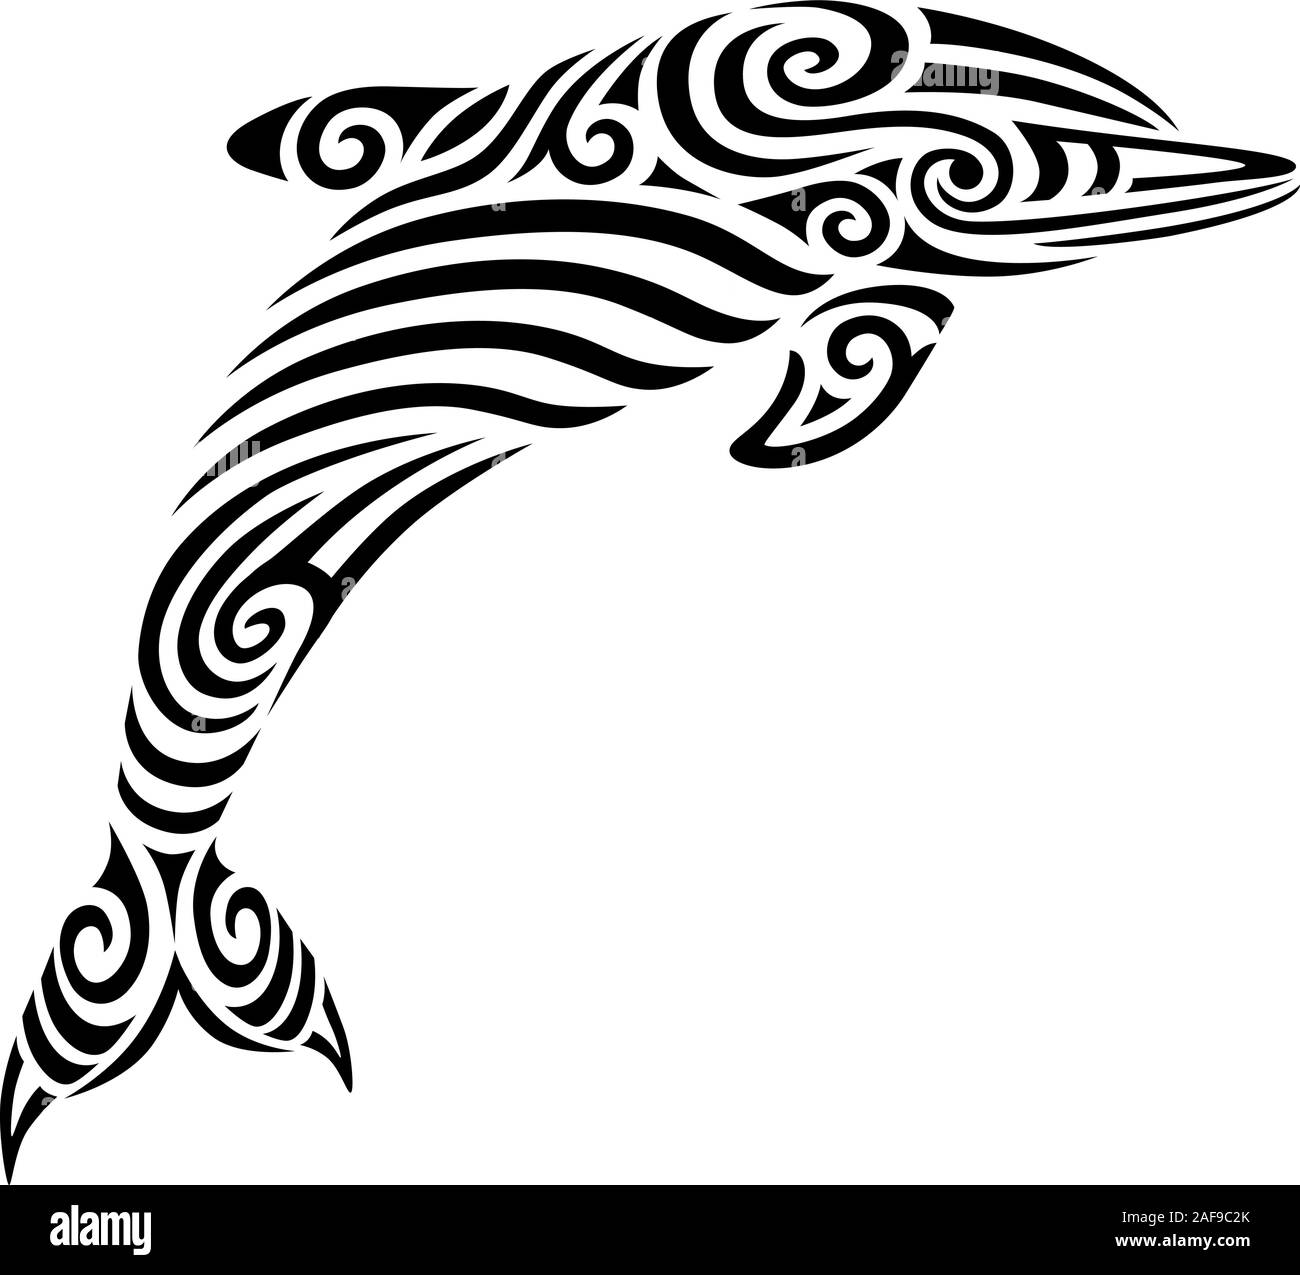 Tatouage dauphins stylisés tribal maori koru design idéal pour la conception de tatouage - changement de couleur facile Illustration de Vecteur